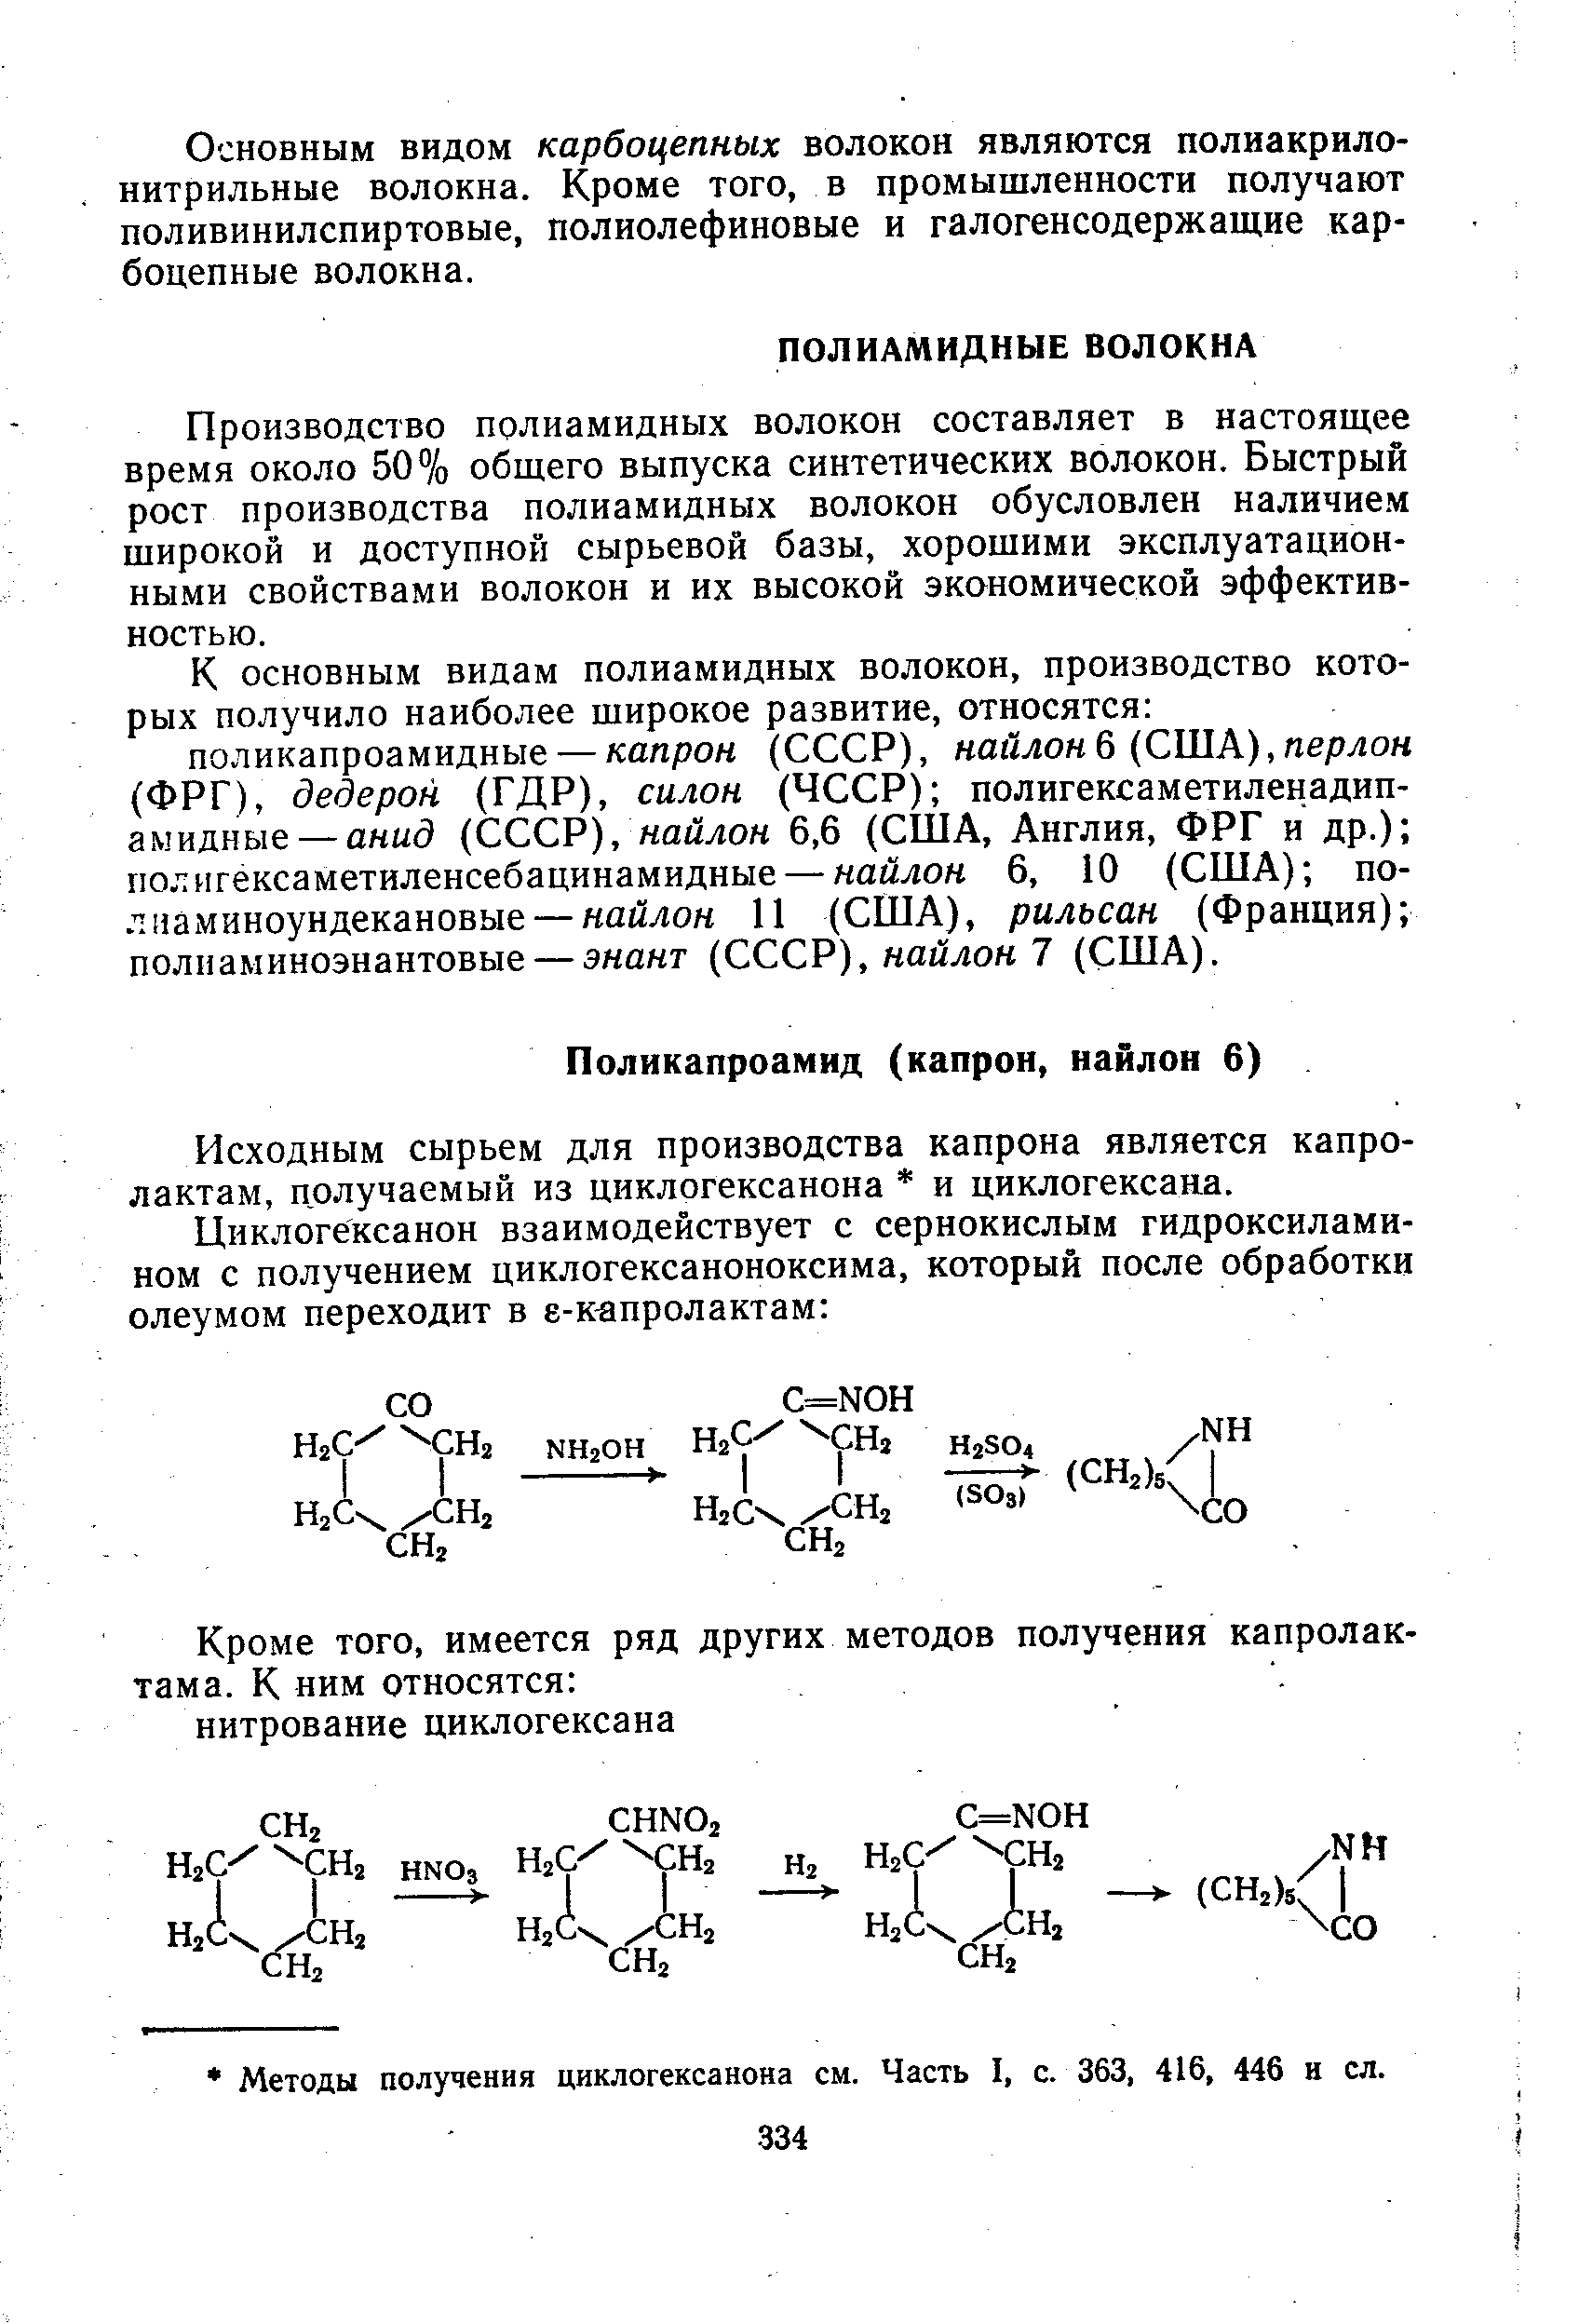 Исходным сырьем для производства капрона является капро-лактам, получаемый из циклогексанона и циклогексана.